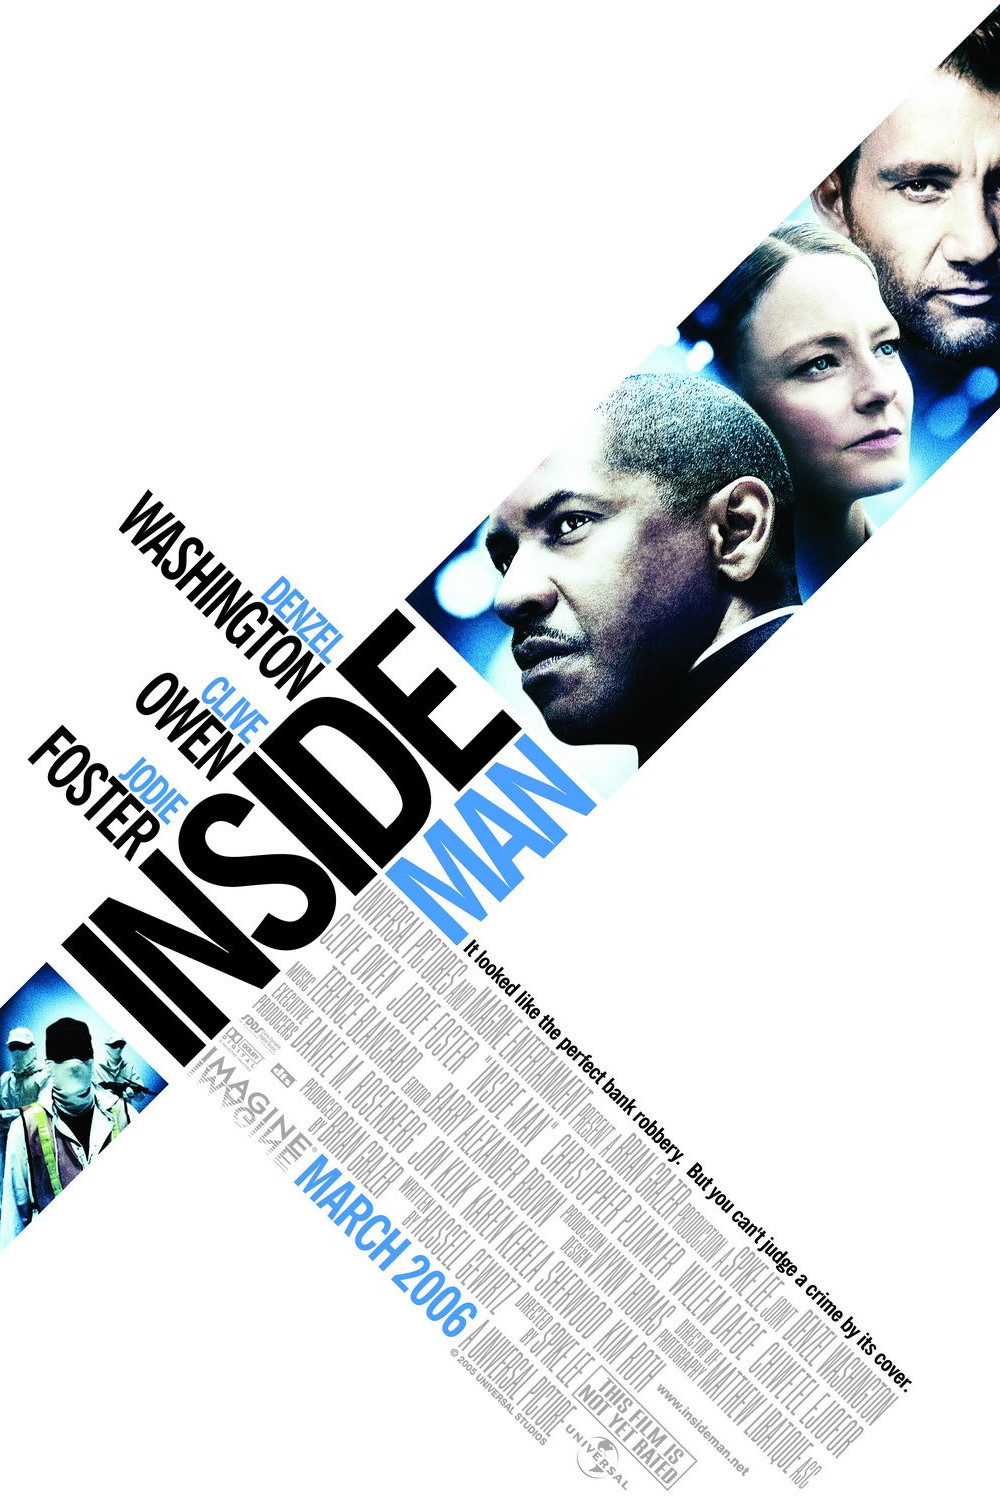 Inside Man (2006) Poster